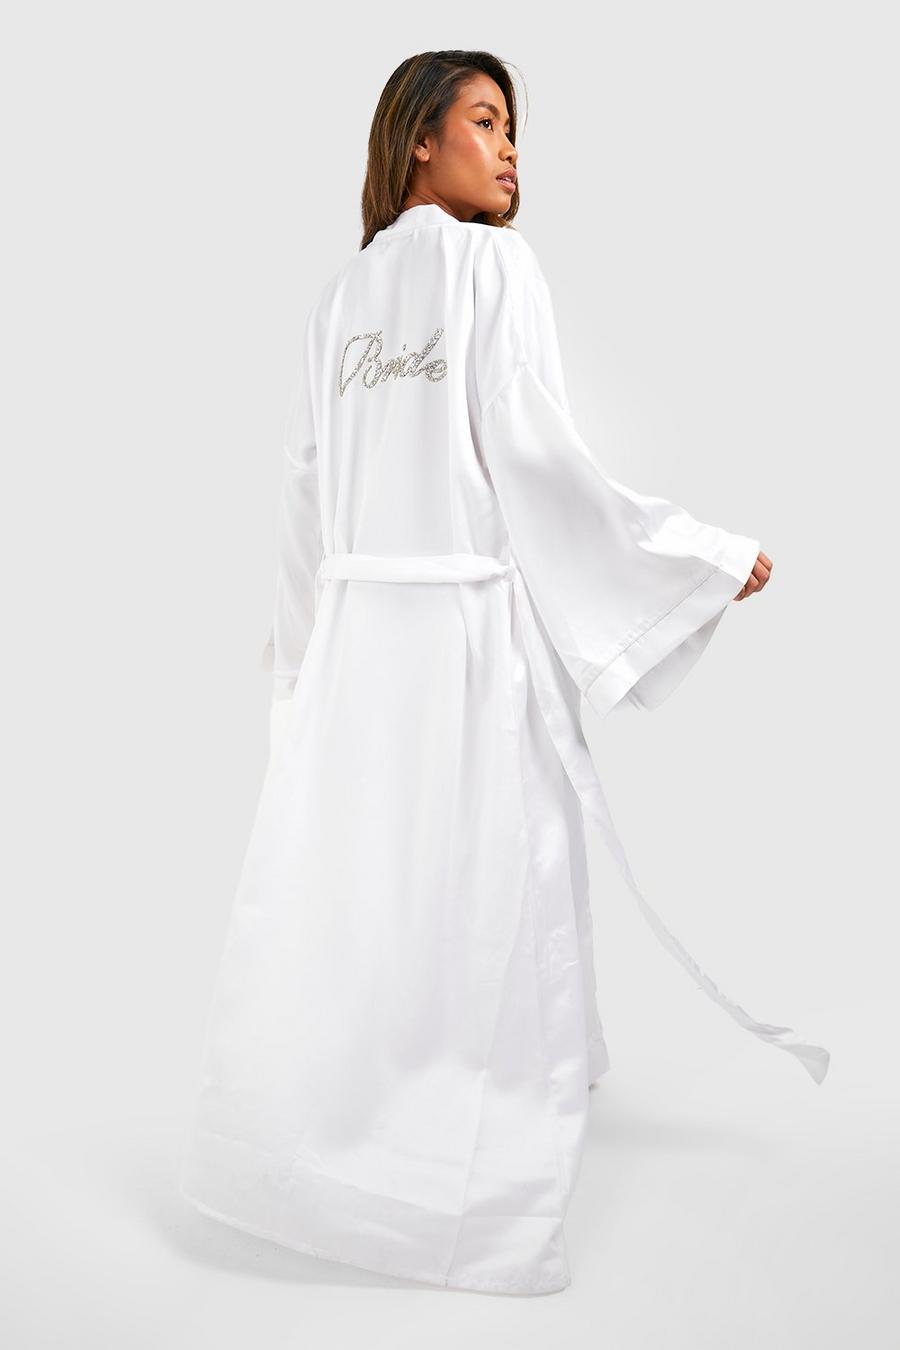 Robe de chambre longue satinée à slogan Bride, White